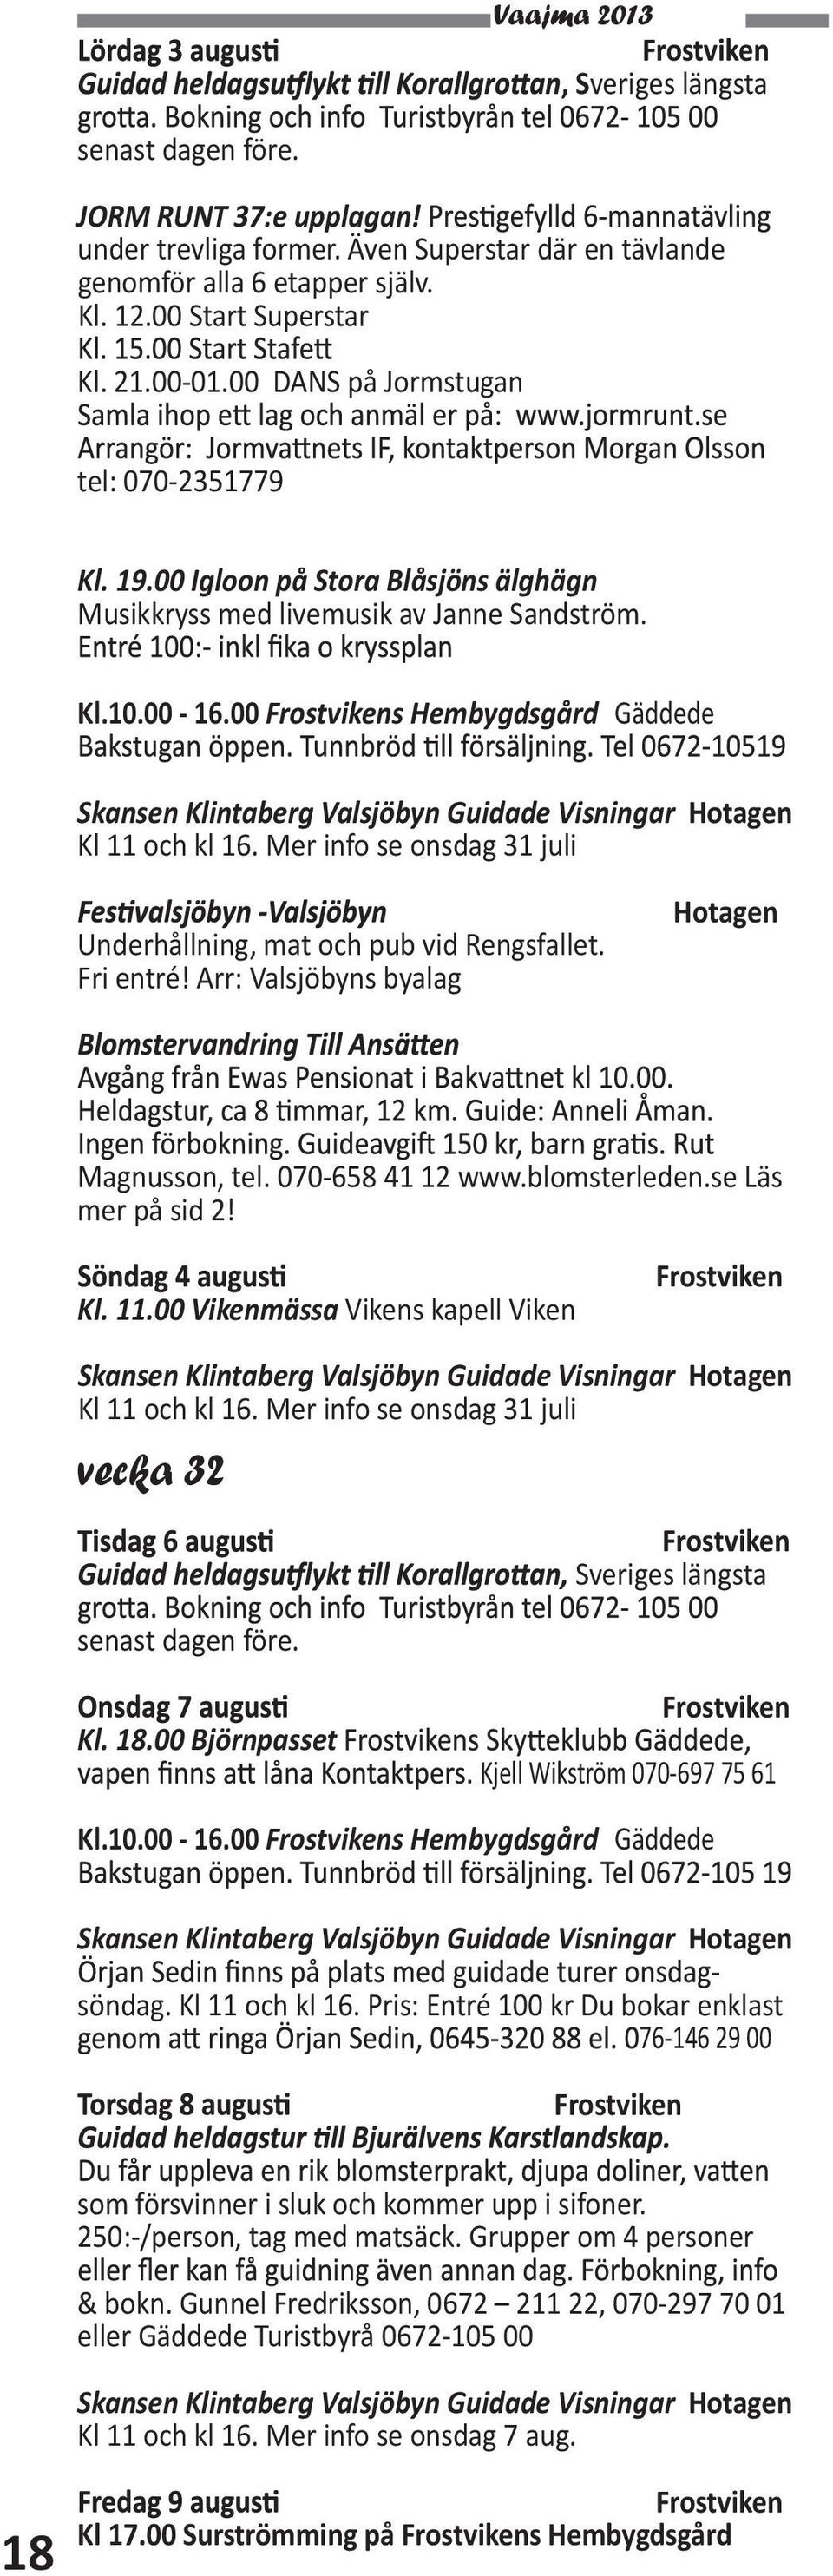 Mer info se onsdag 31 juli Underhållning, mat och pub vid Rengsfallet. Fri entré! Arr: Valsjöbyns byalag Magnusson, tel. 070-658 41 12 www.blomsterleden.se Läs mer på sid 2! Kl. 11.